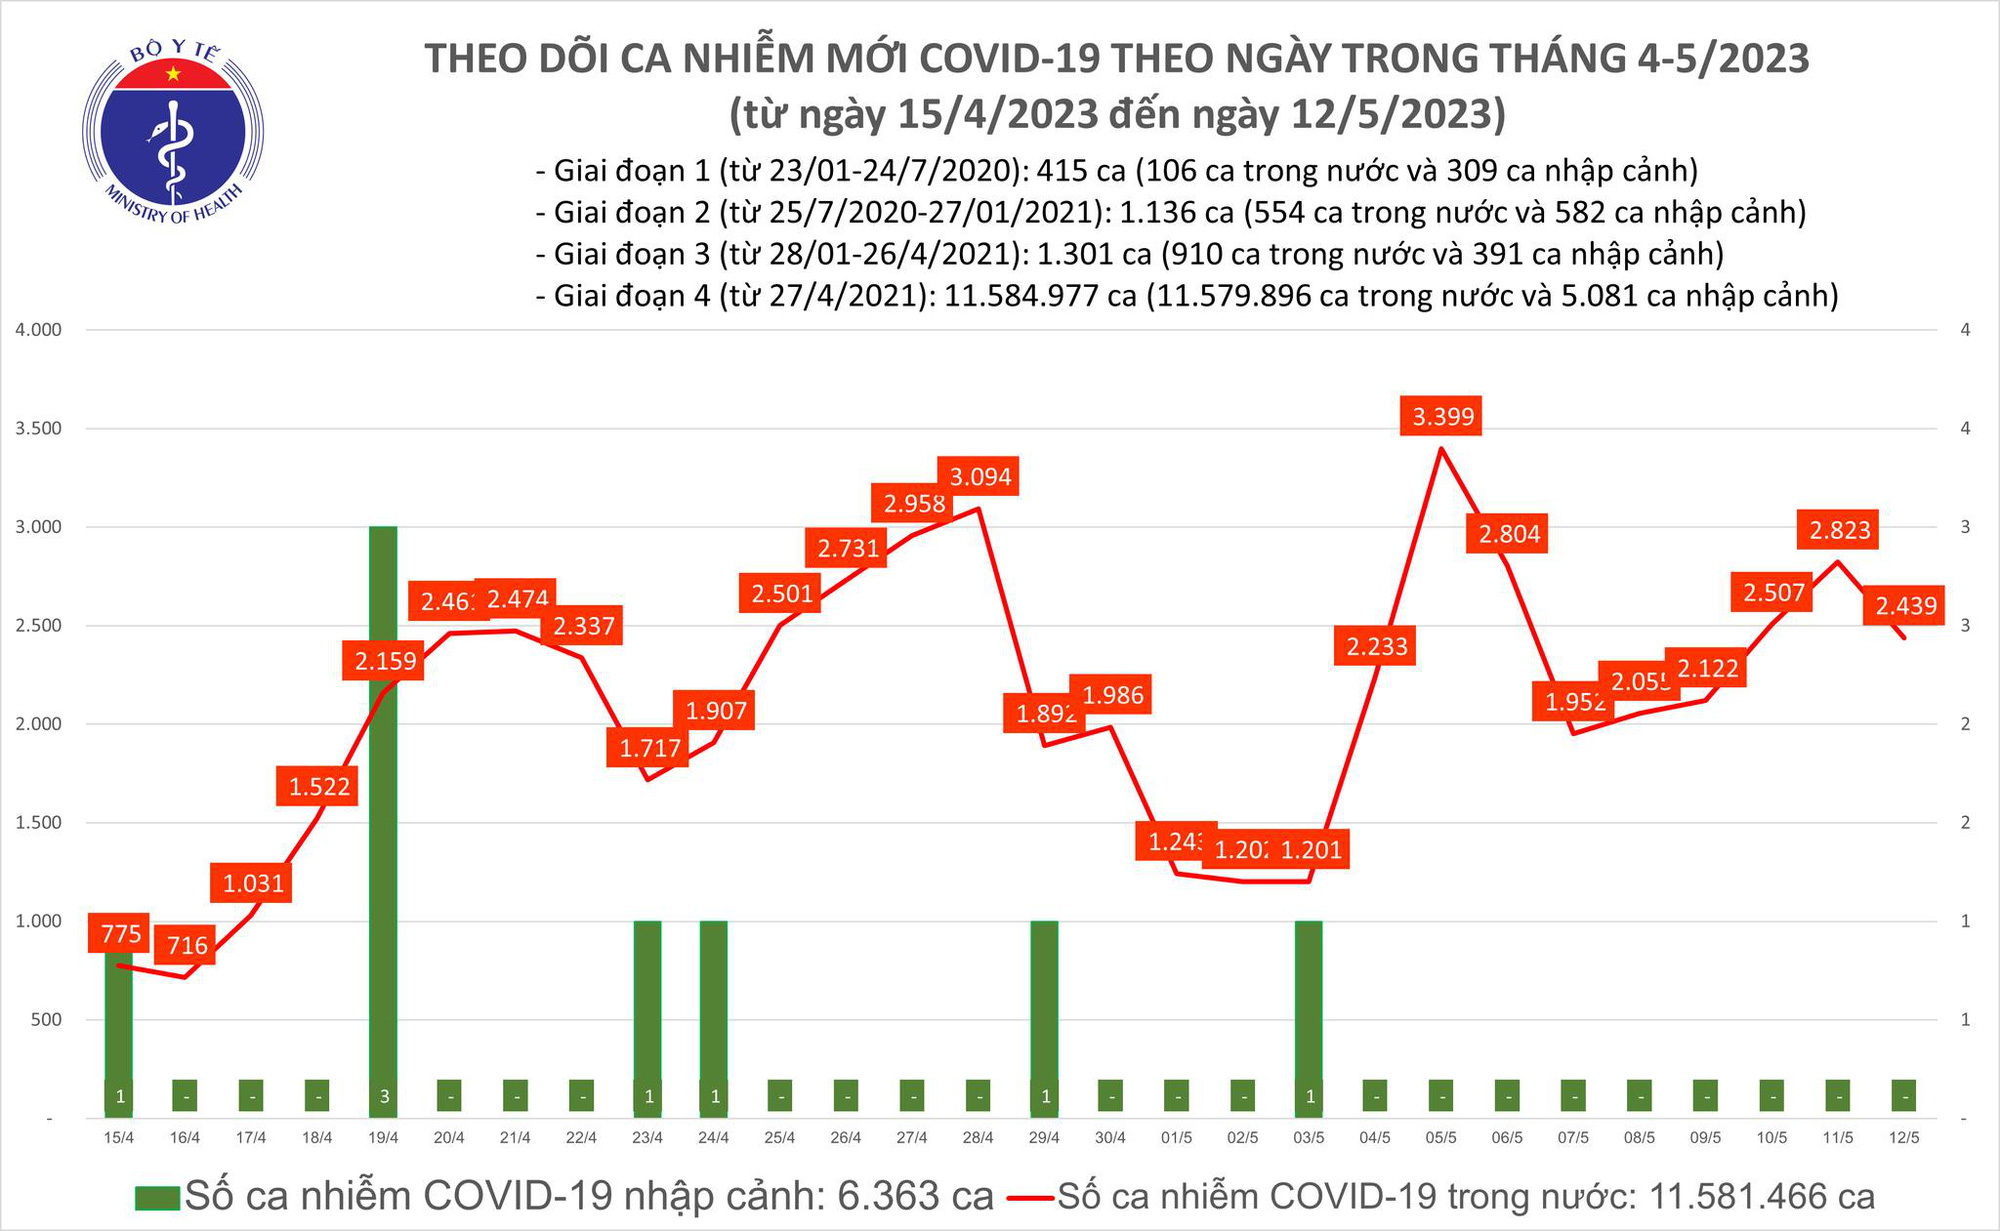 Ngày 12/5: Thêm 2.439 ca mắc COVID-19, 1 bệnh nhân tử vong tại Tây Ninh - Ảnh 2.